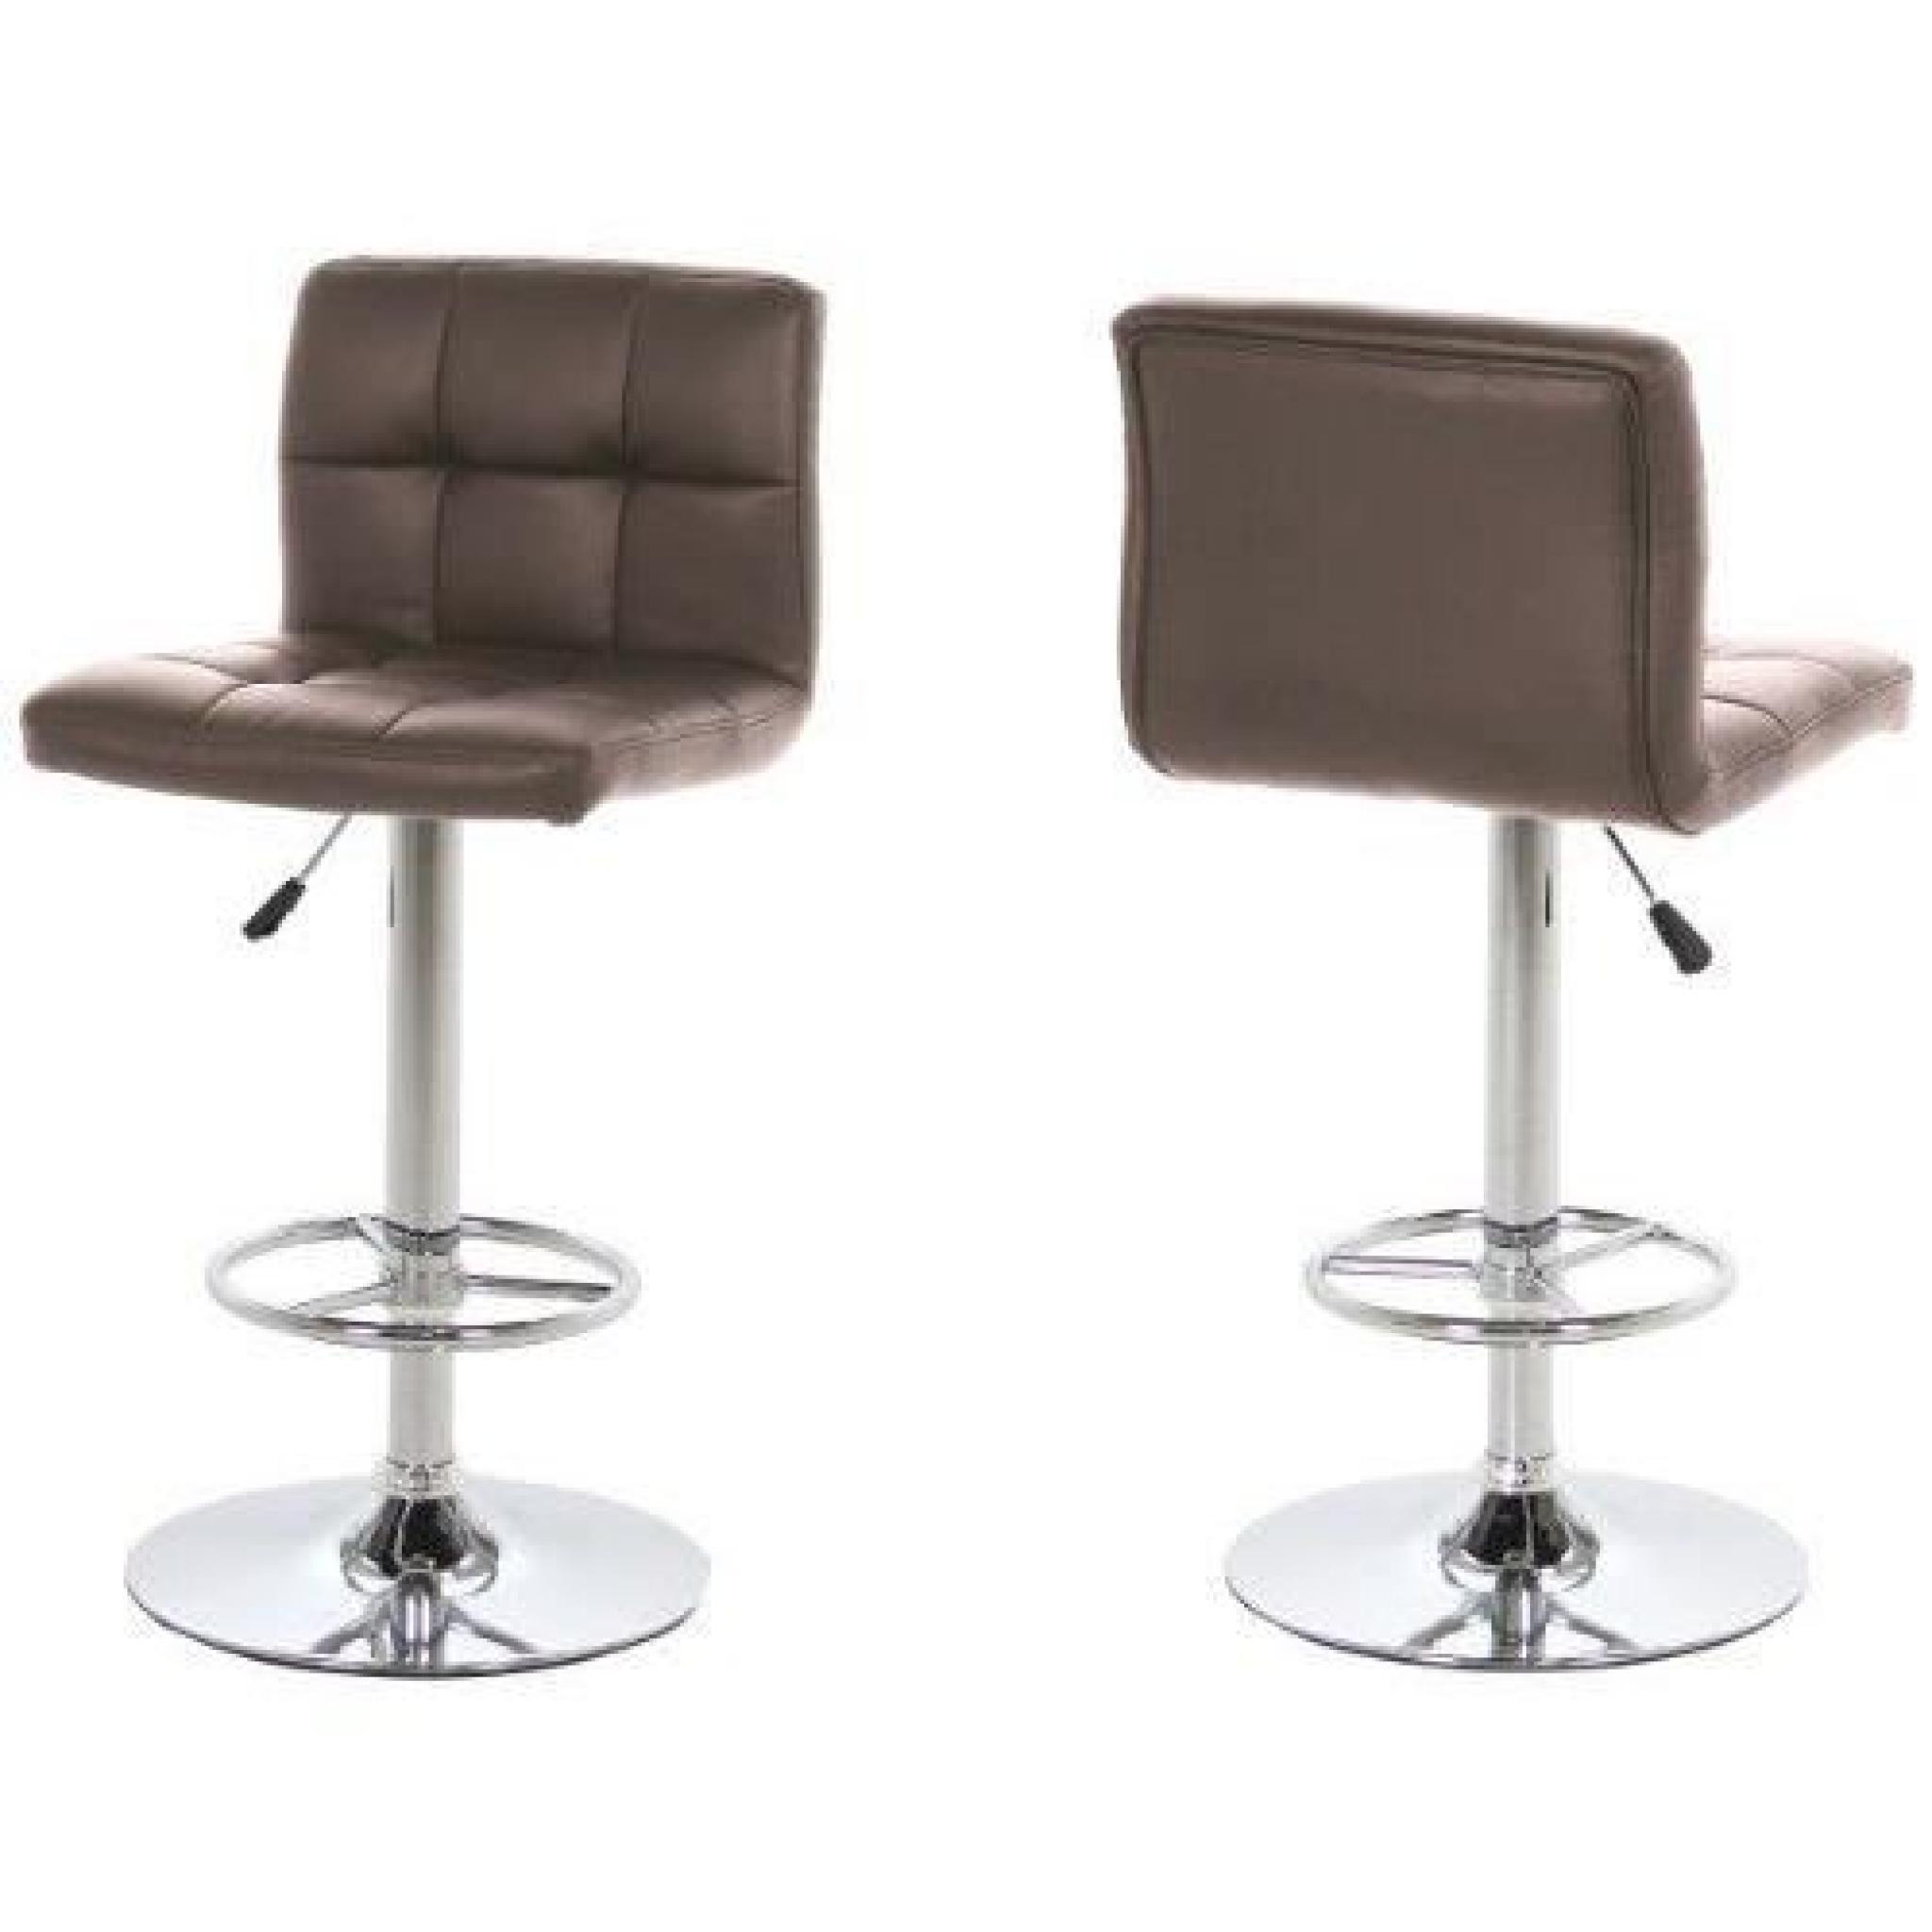 AC Design Furniture 39960 Morten Lot de 2 tabourets de bar avec revêtement en simili cuir et cadre et repose-pieds chromés Marron…